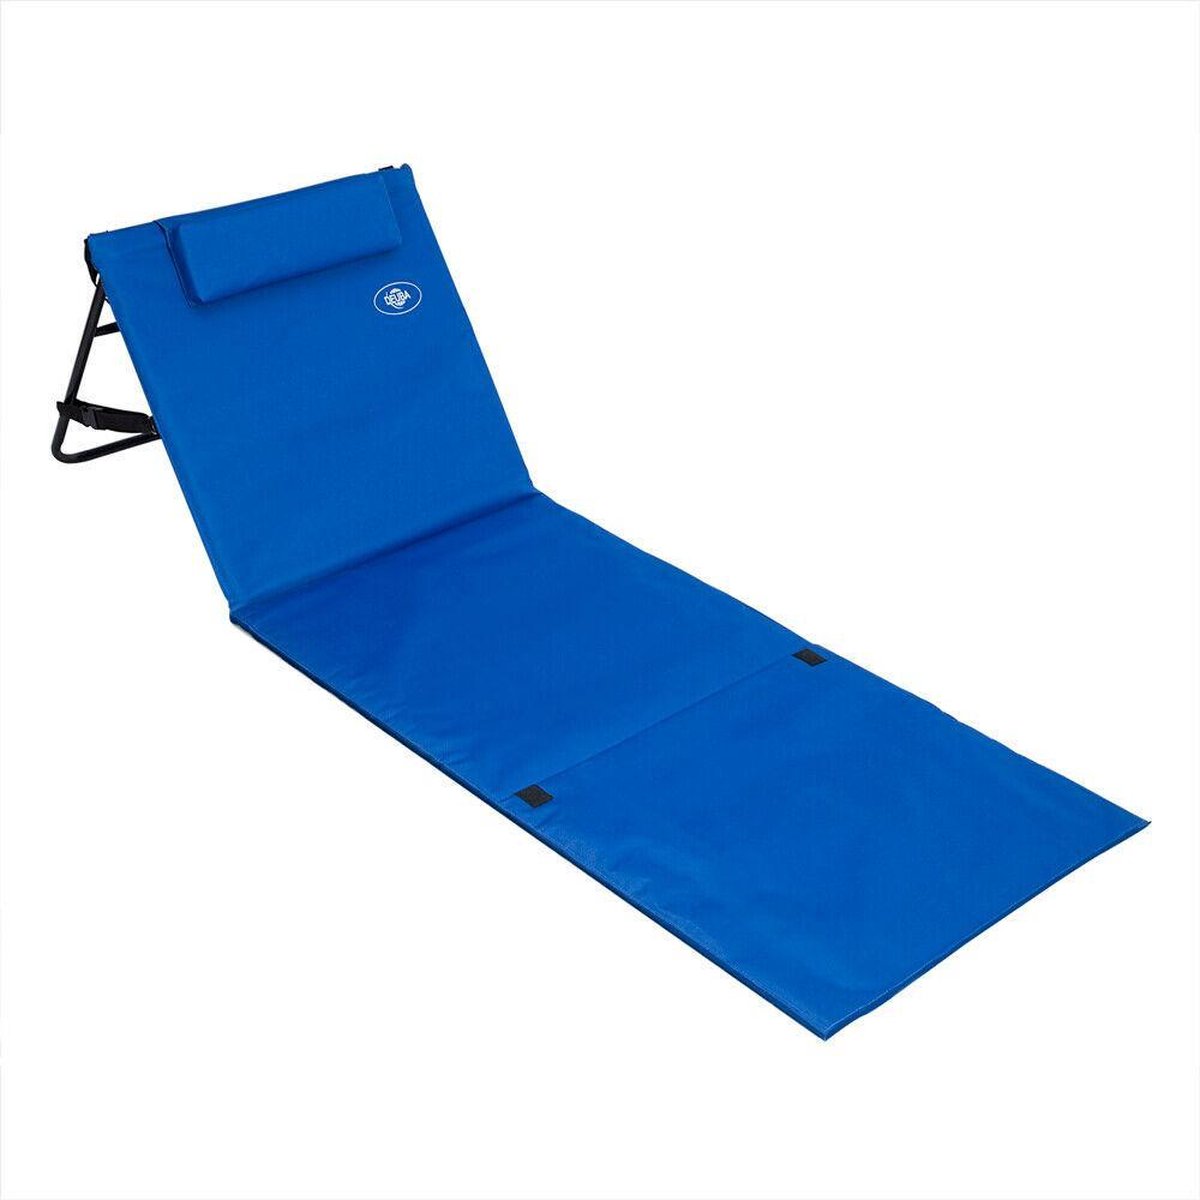 Strandmat met rugleuning, strandbed blauw | bol.com